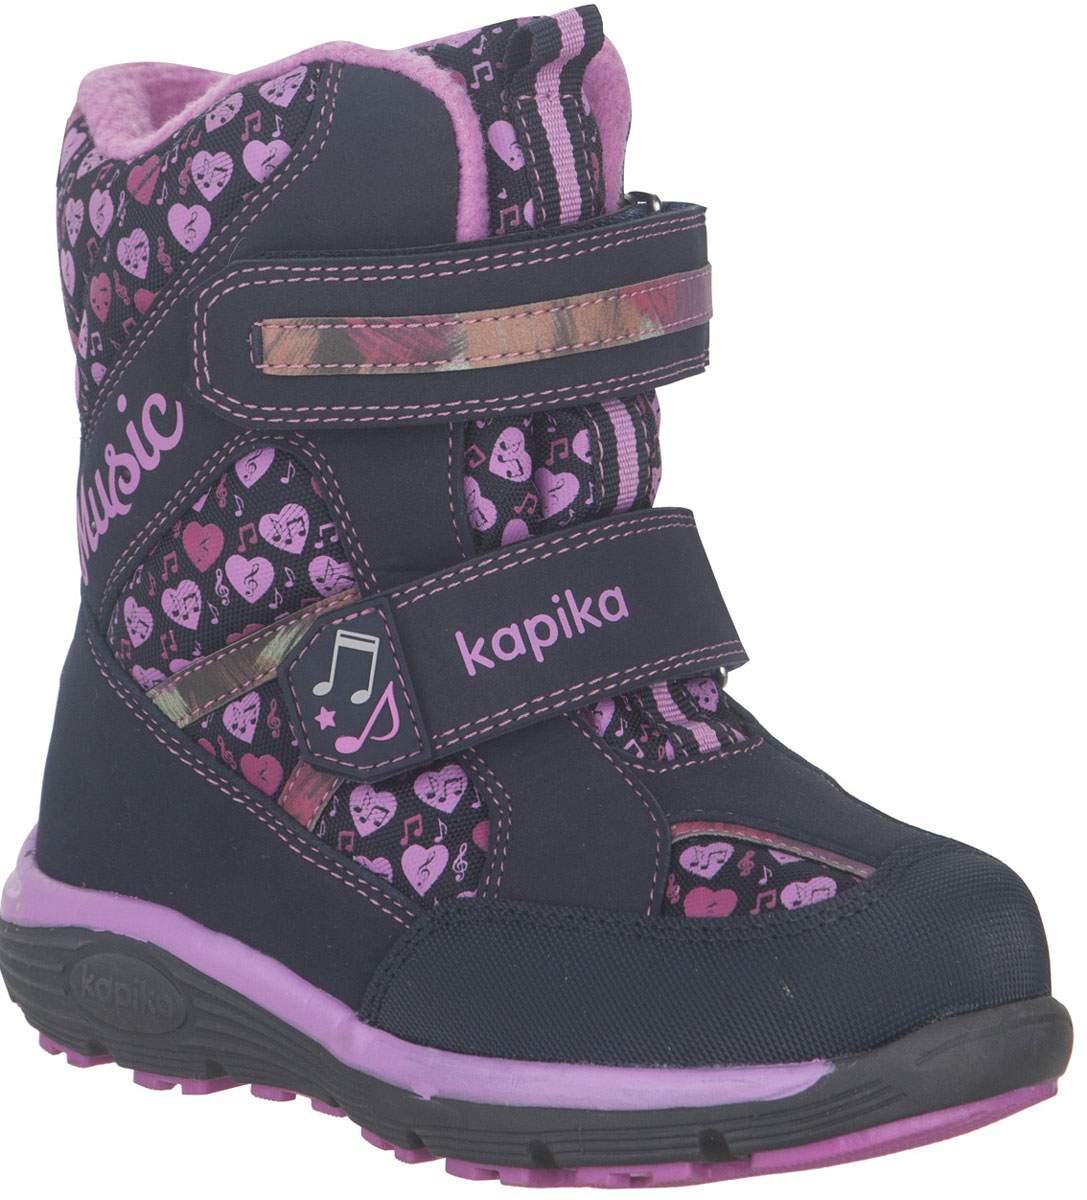 Ботинки для девочки Kapika, цвет: темно-синий, розовый. 43215-1. Размер 31